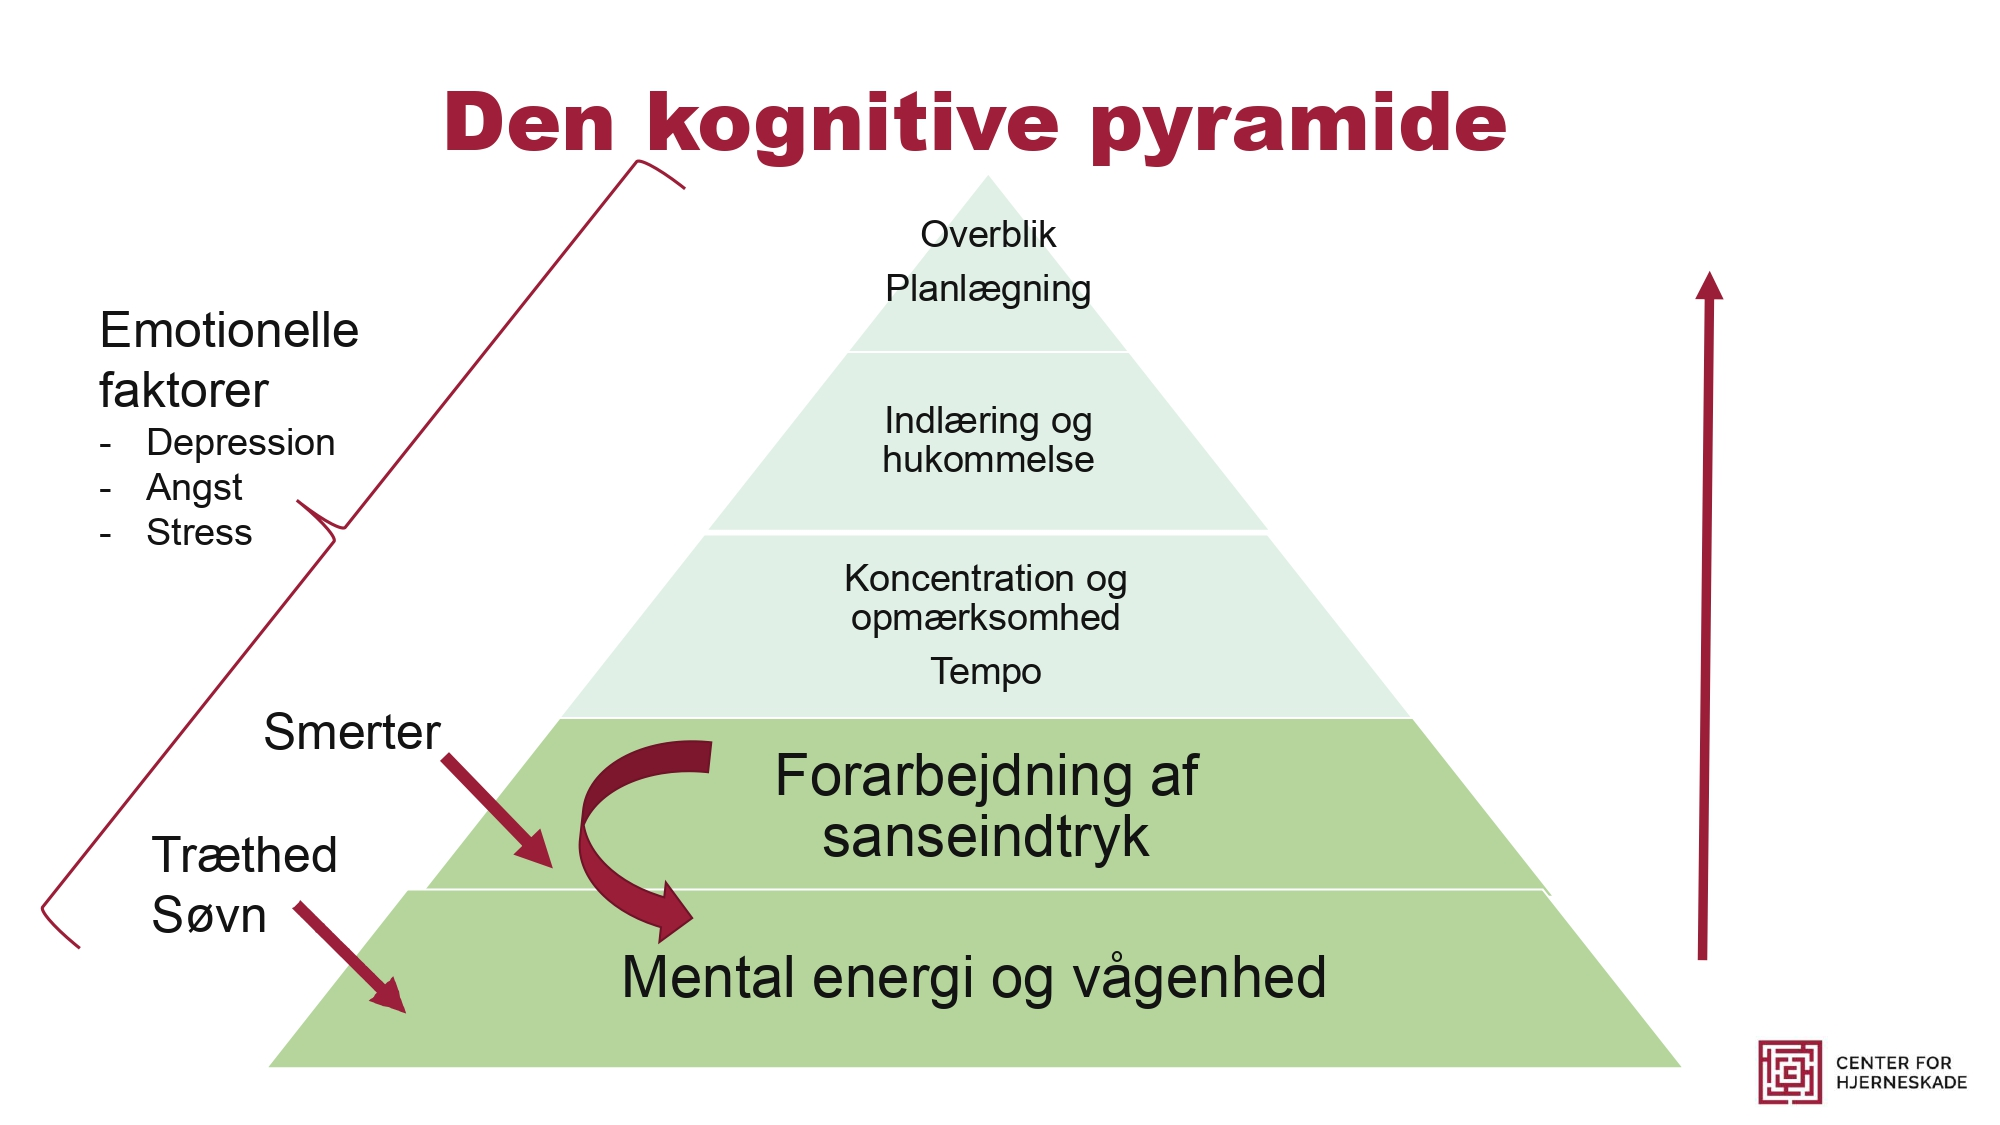 Den kognitive pyramide